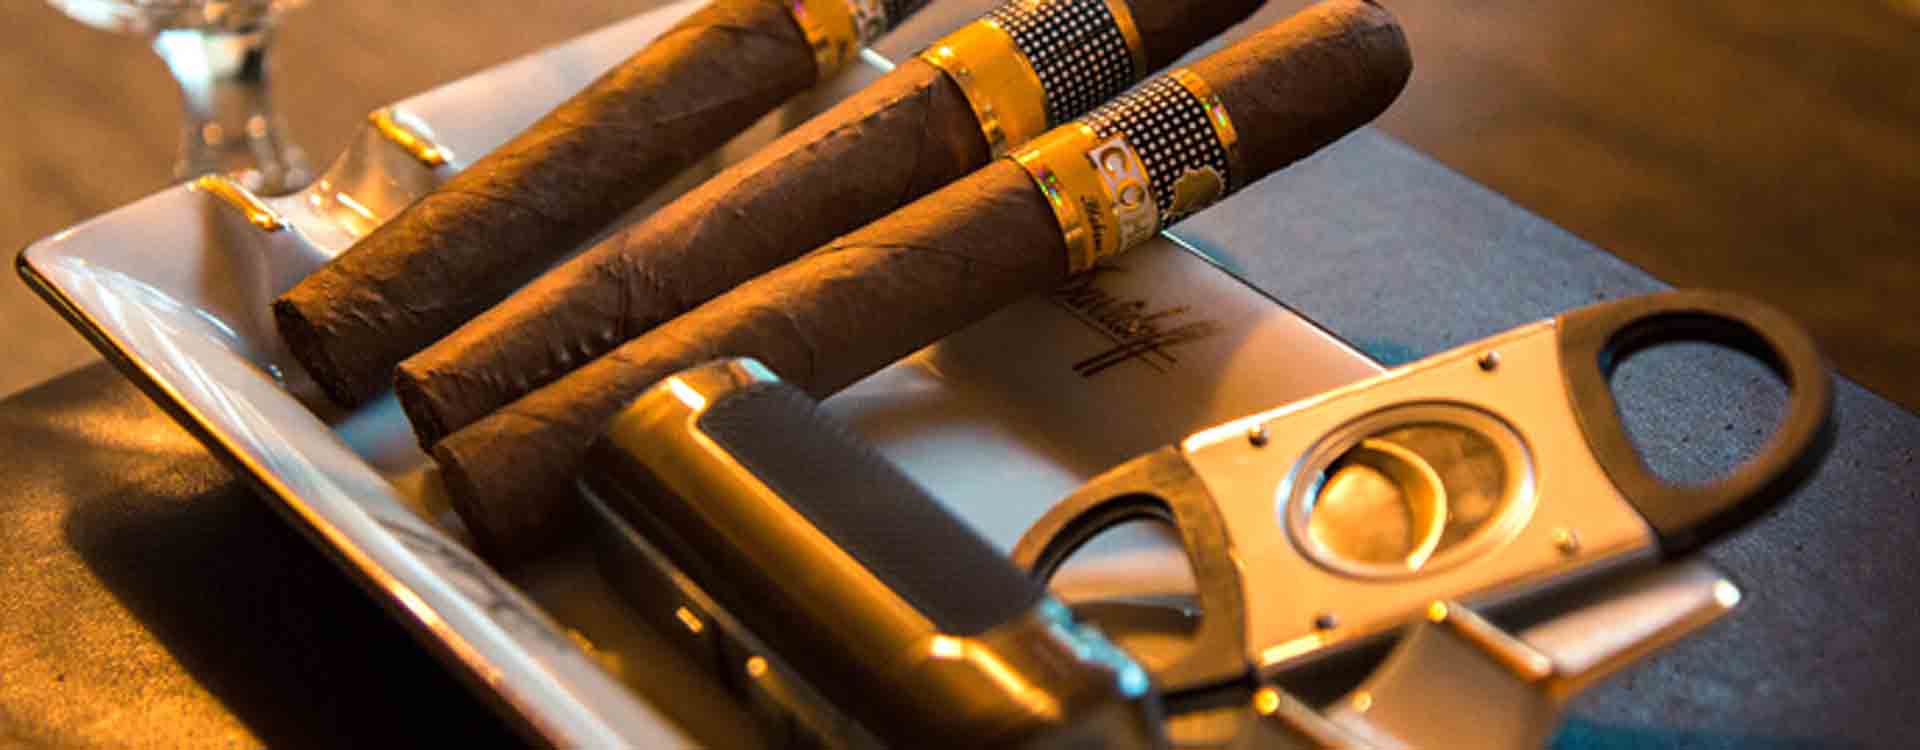 Orezávač na cigary v cigarovom popolníku a cigary